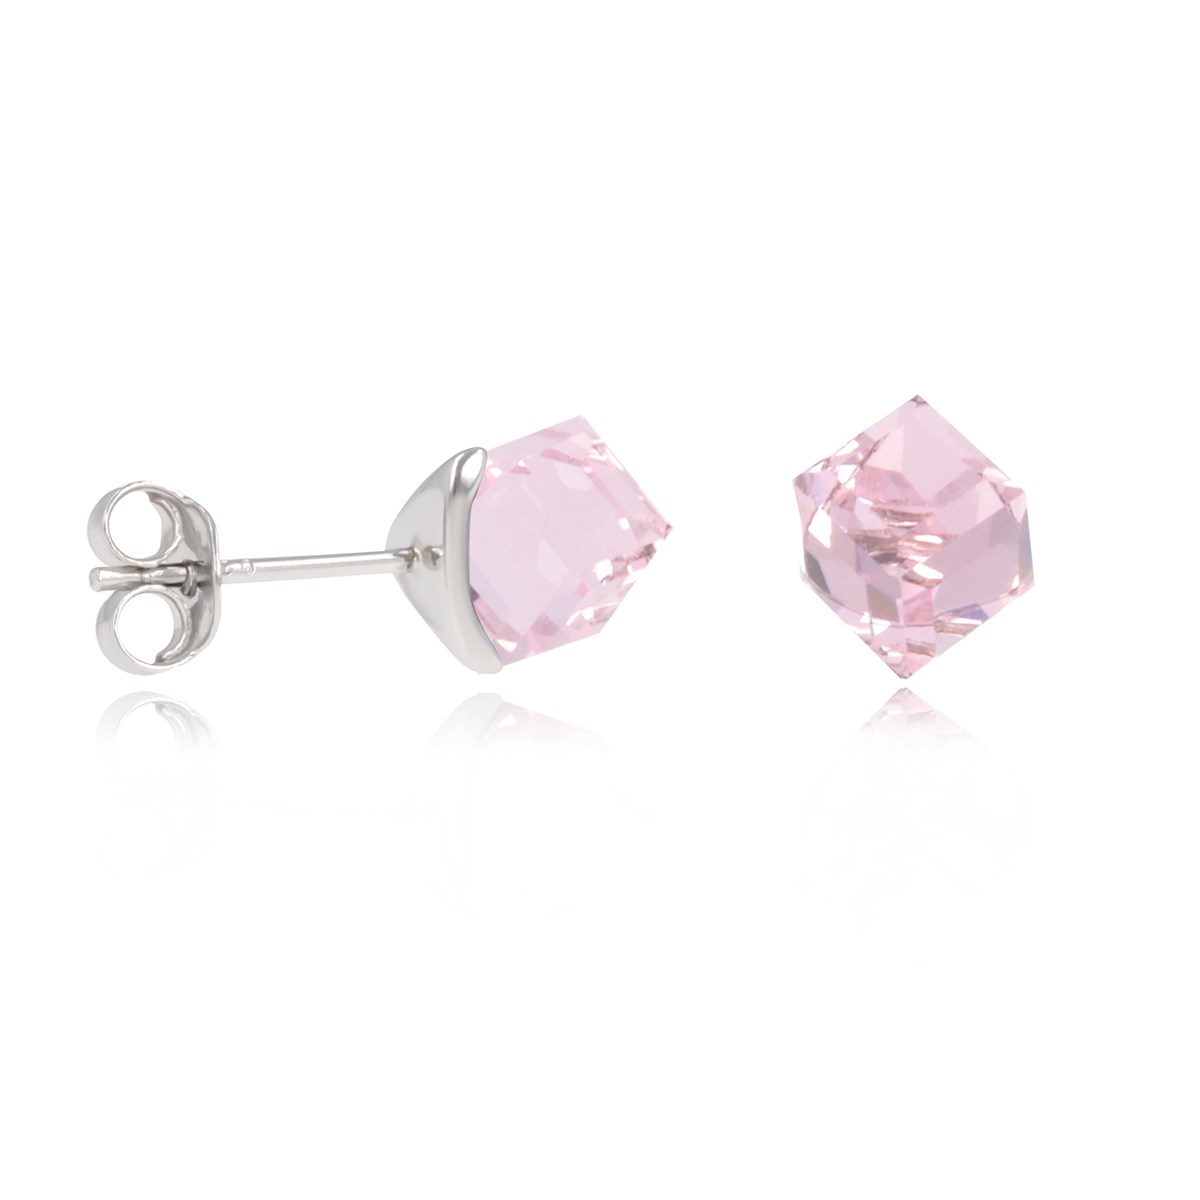 Boucles d'oreille argent rhodié cube cristal rose facetté 5MM